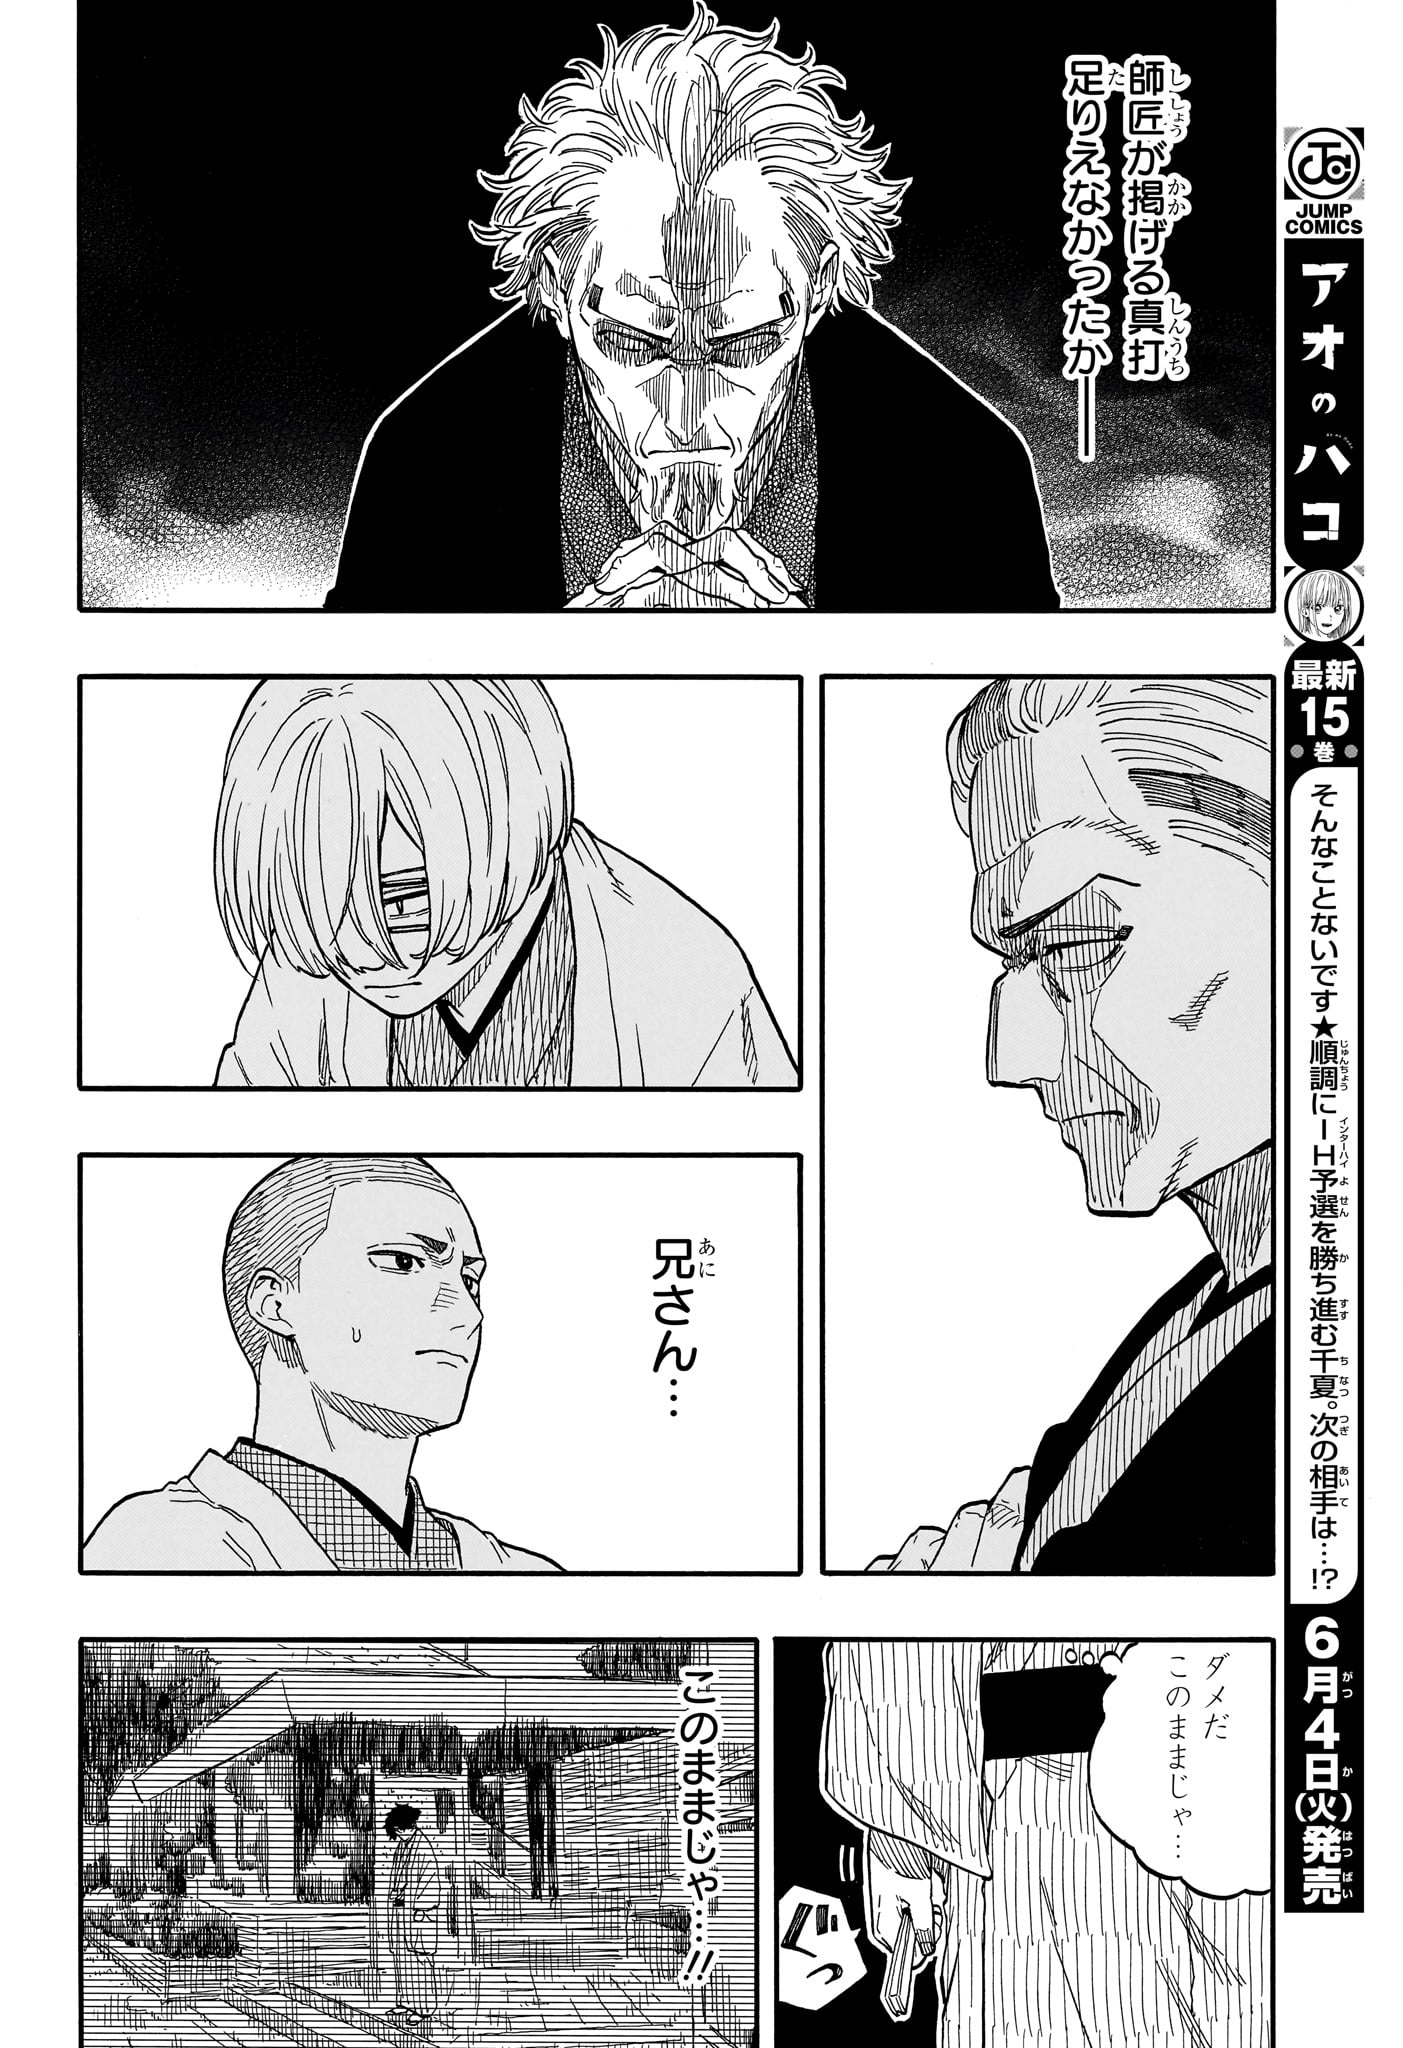 Akane-Banashi - Chapter 112 - Page 16